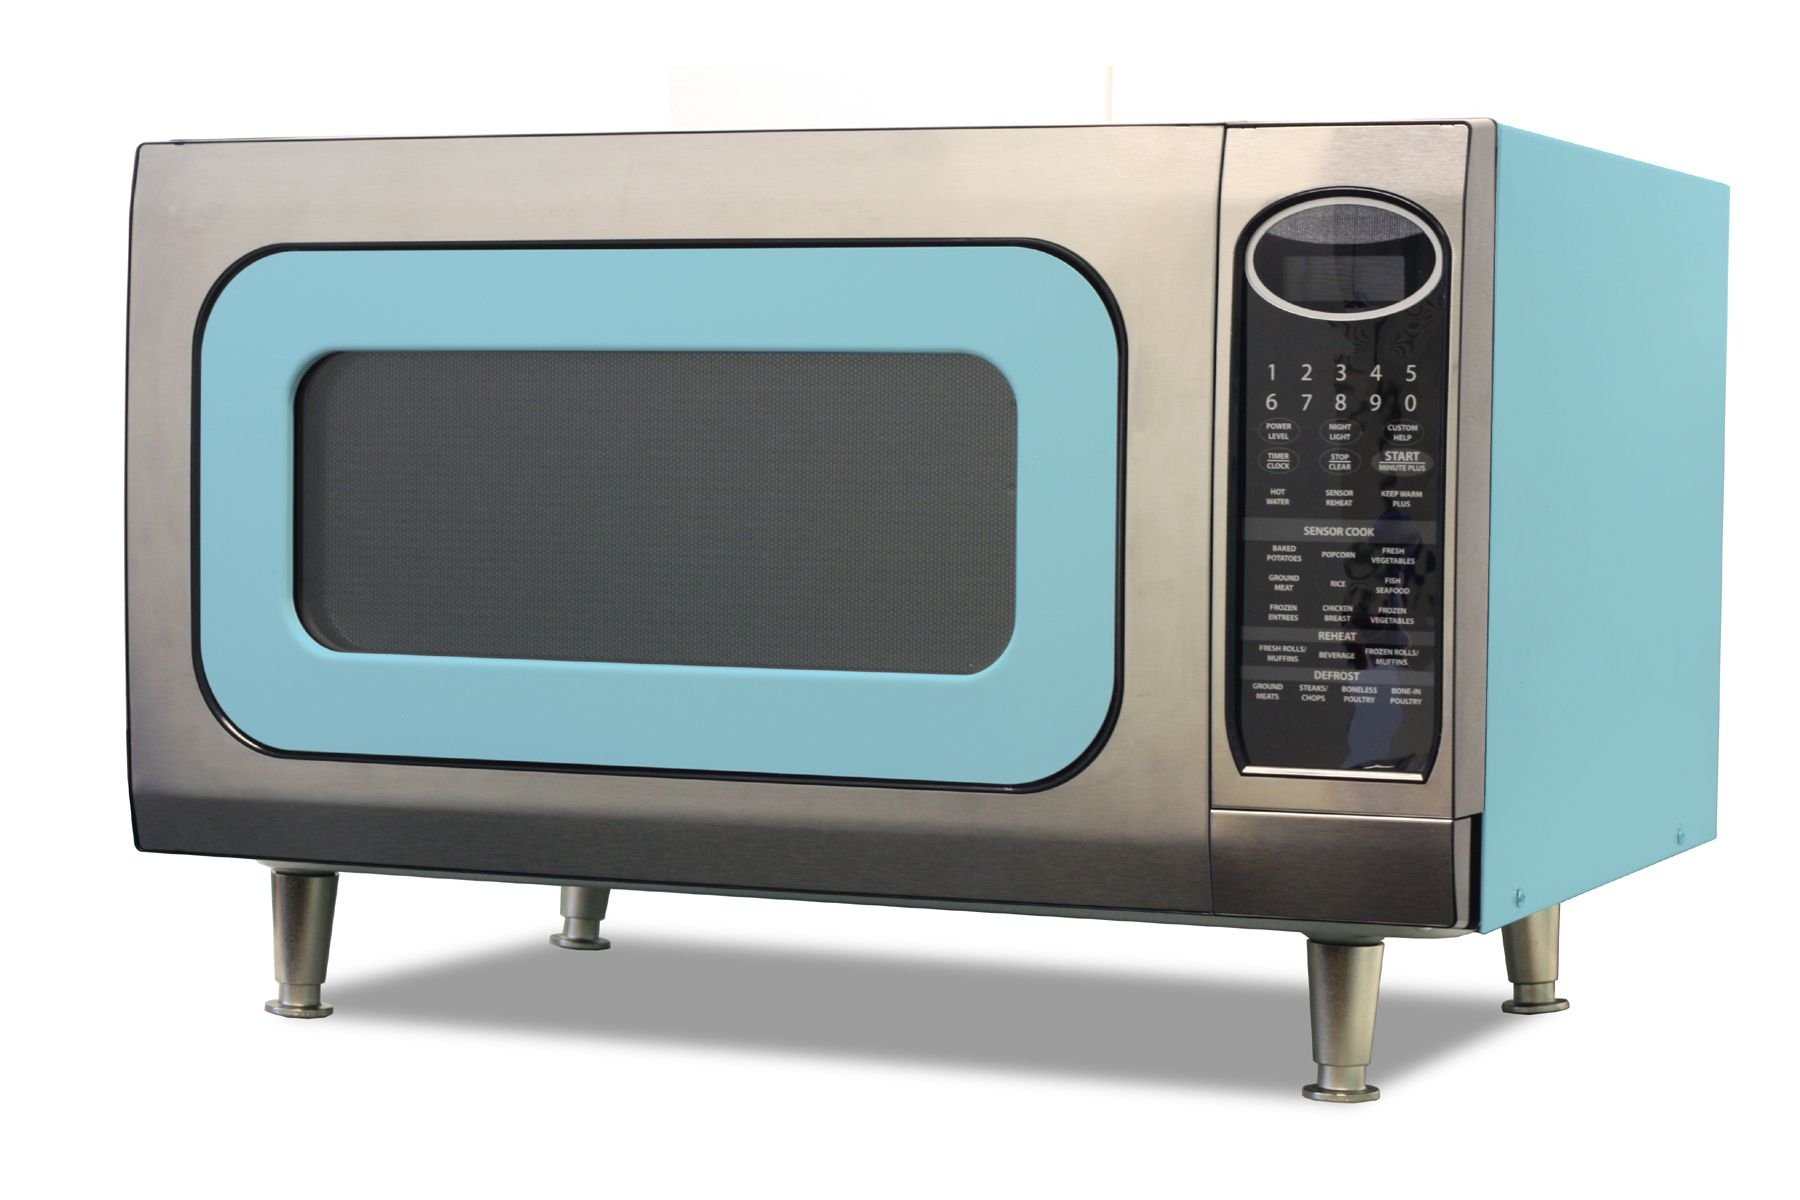 Свч отдельностоящая. Smeg 50's Retro Style микроволновая печь. Смег микроволновая печь голубая. Микроволновка Смег отдельностоящая ретро. Микроволновая печь Смег отдельностоящая.